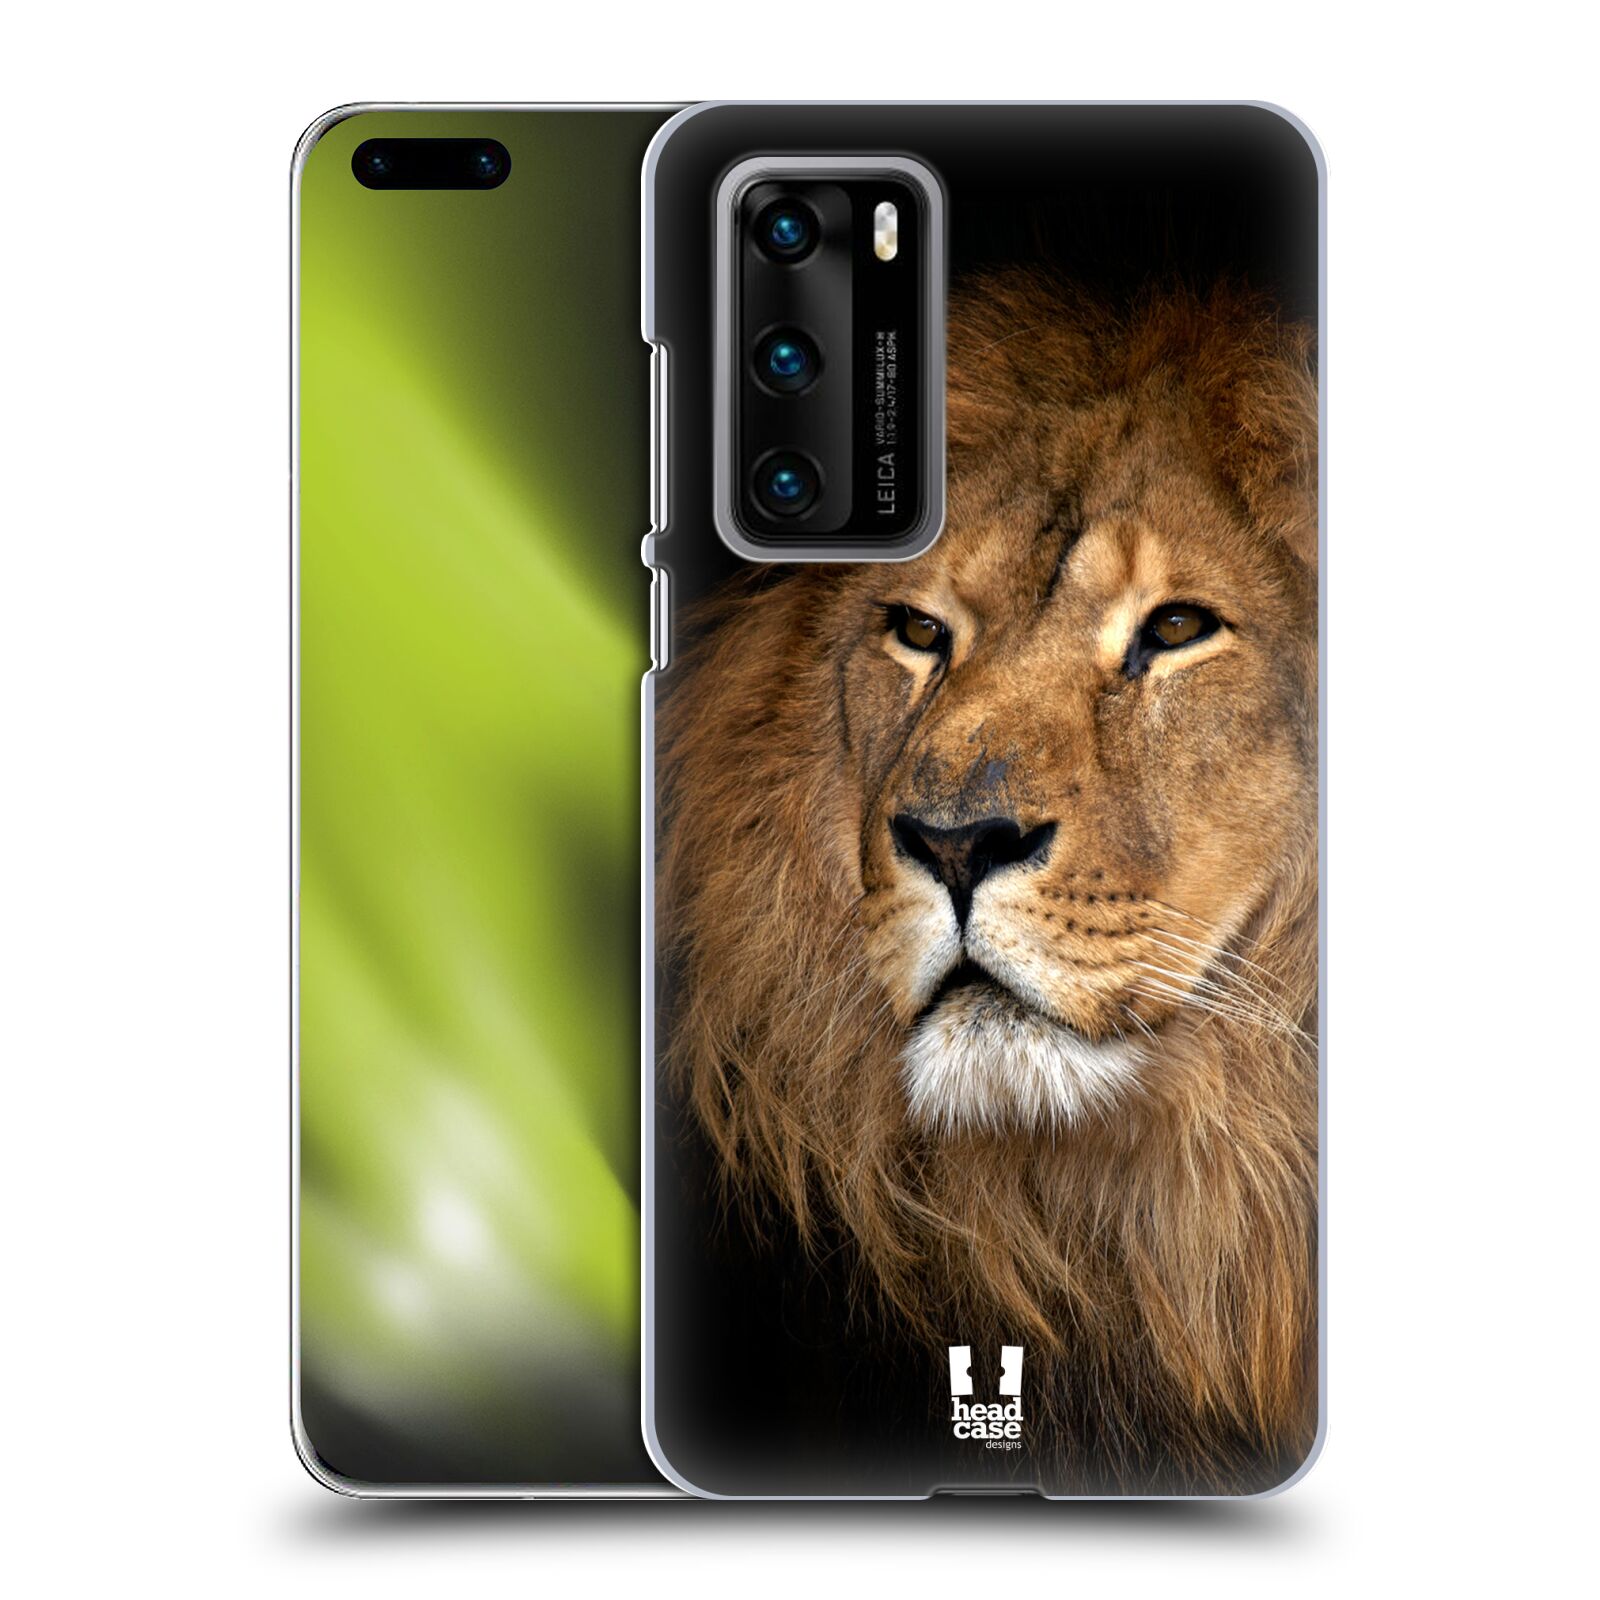 Zadní obal pro mobil Huawei P40 - HEAD CASE - Svět zvířat král zvířat Lev